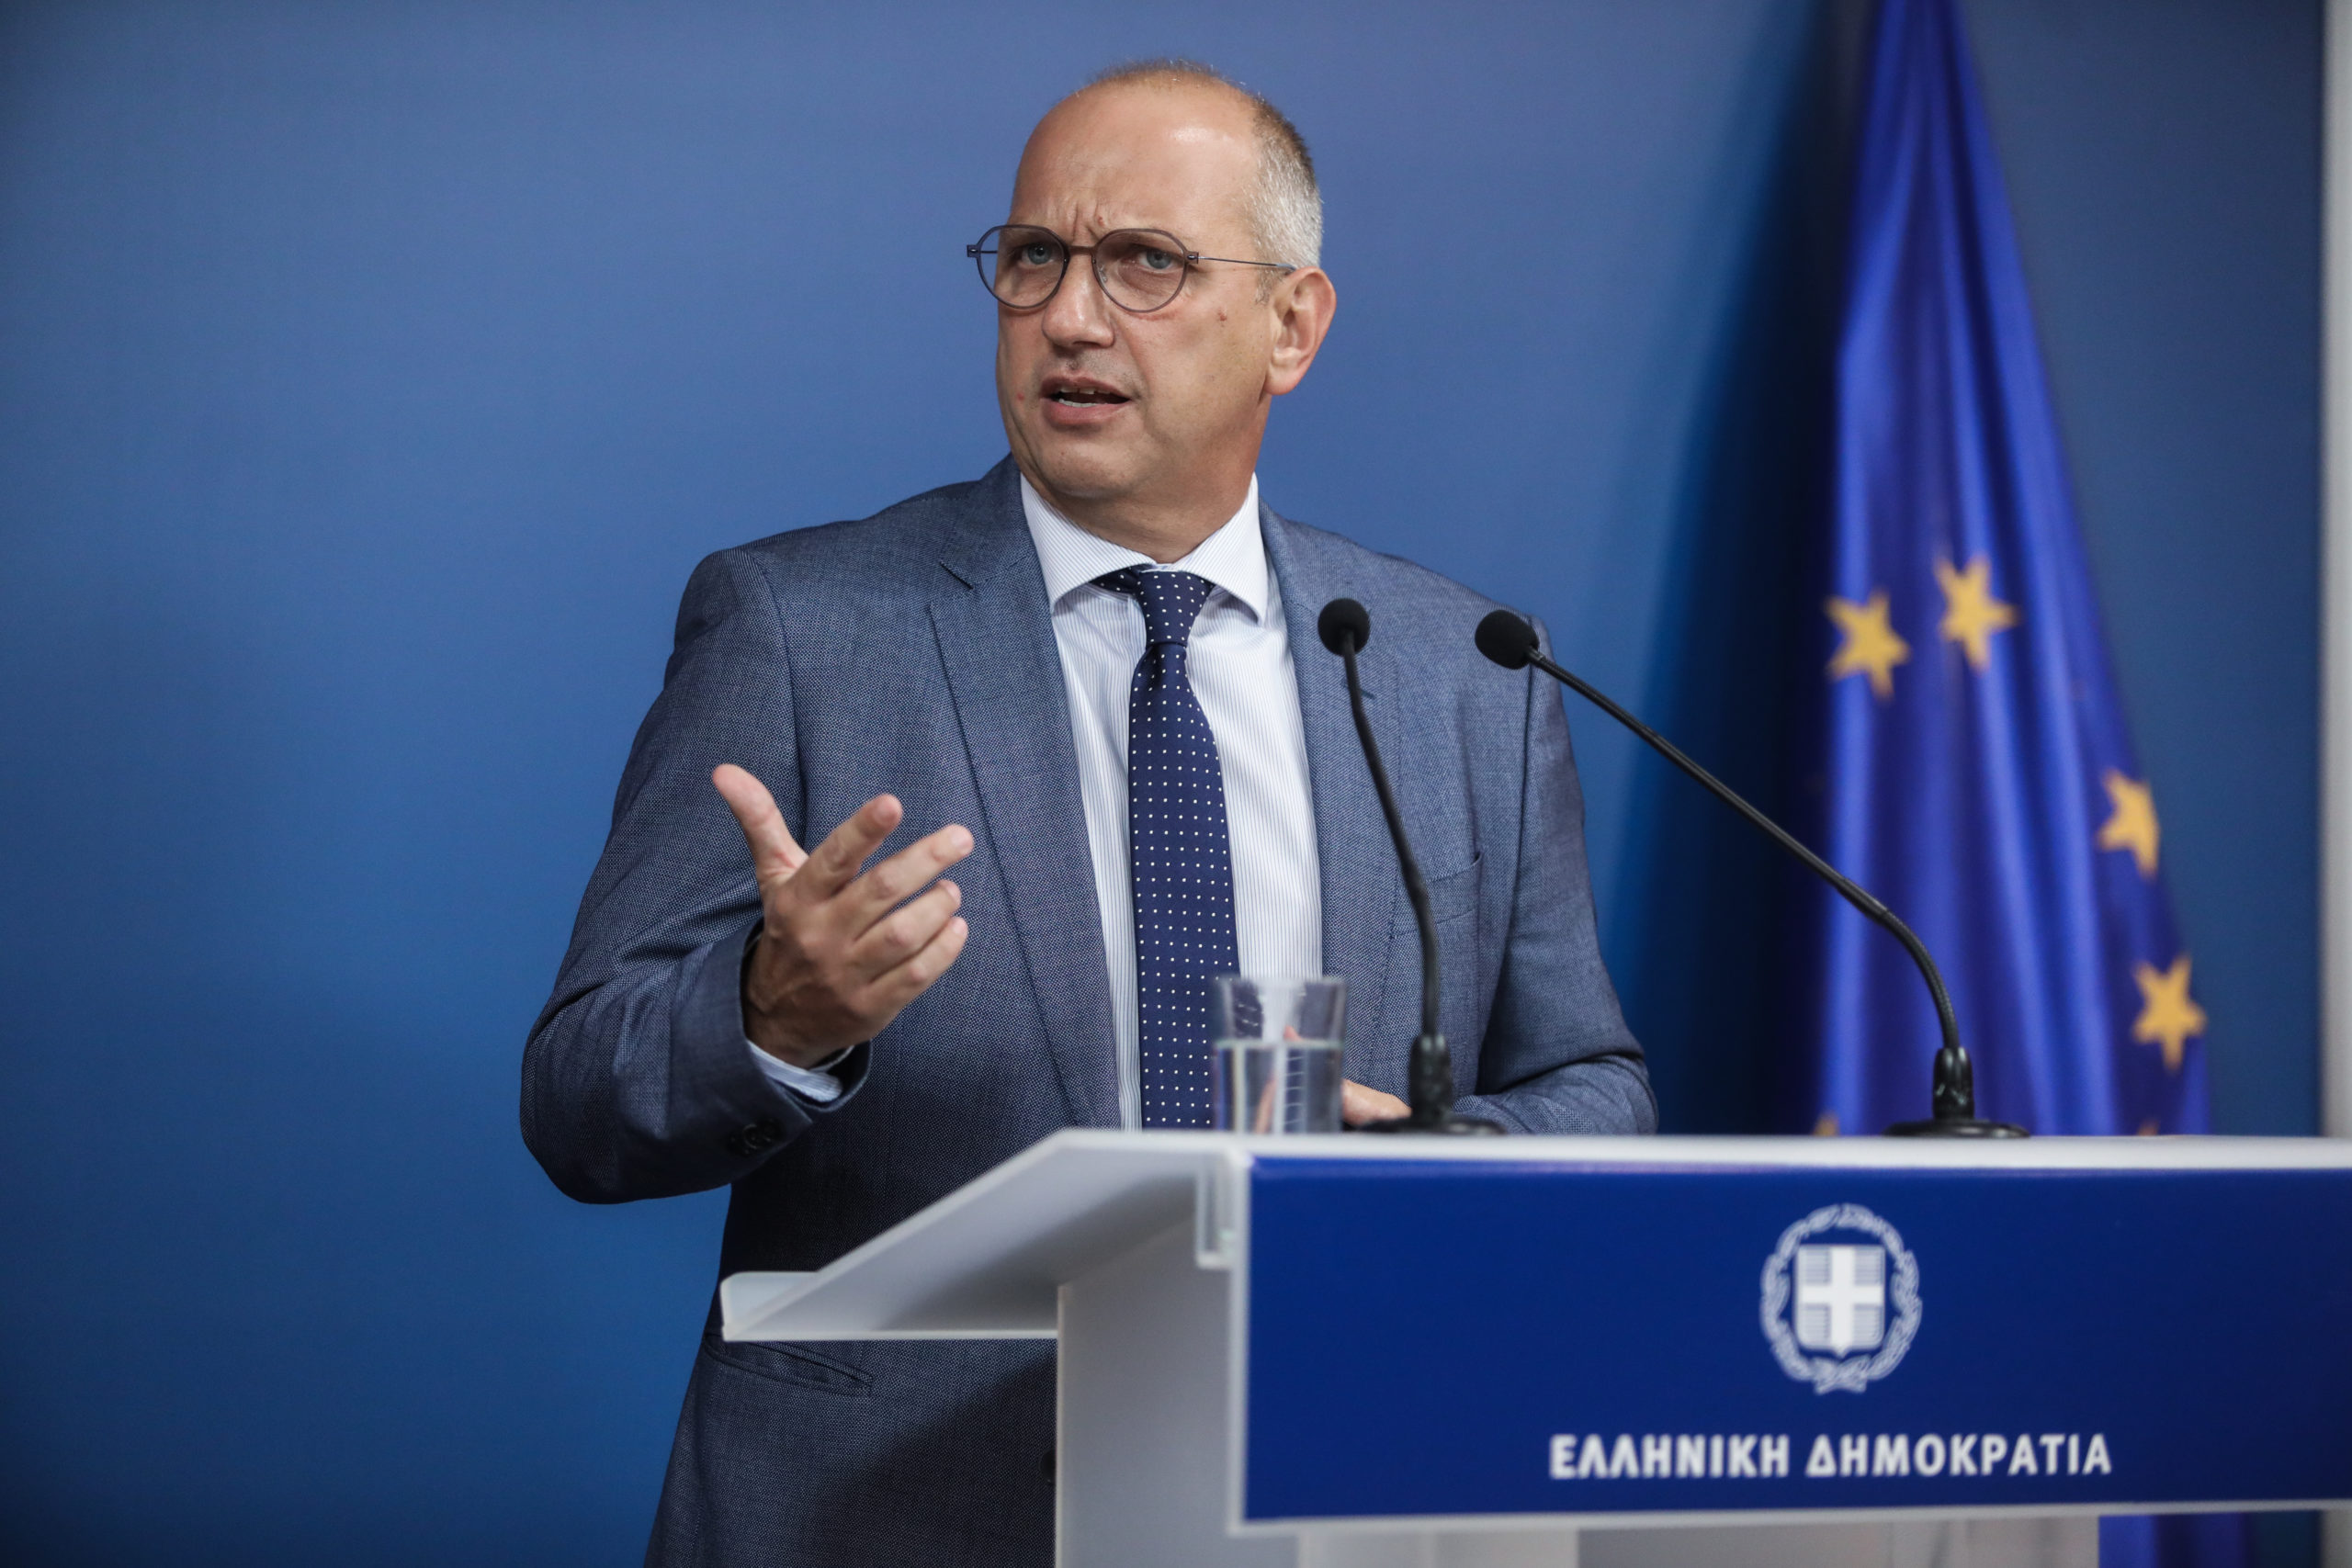 Γ. Οικονόμου: Ο κ. Ανδρουλάκης αρνείται να επικοινωνήσει με την Κυβέρνηση – Εργαλειοποιεί την υπόθεση των υποκλοπών